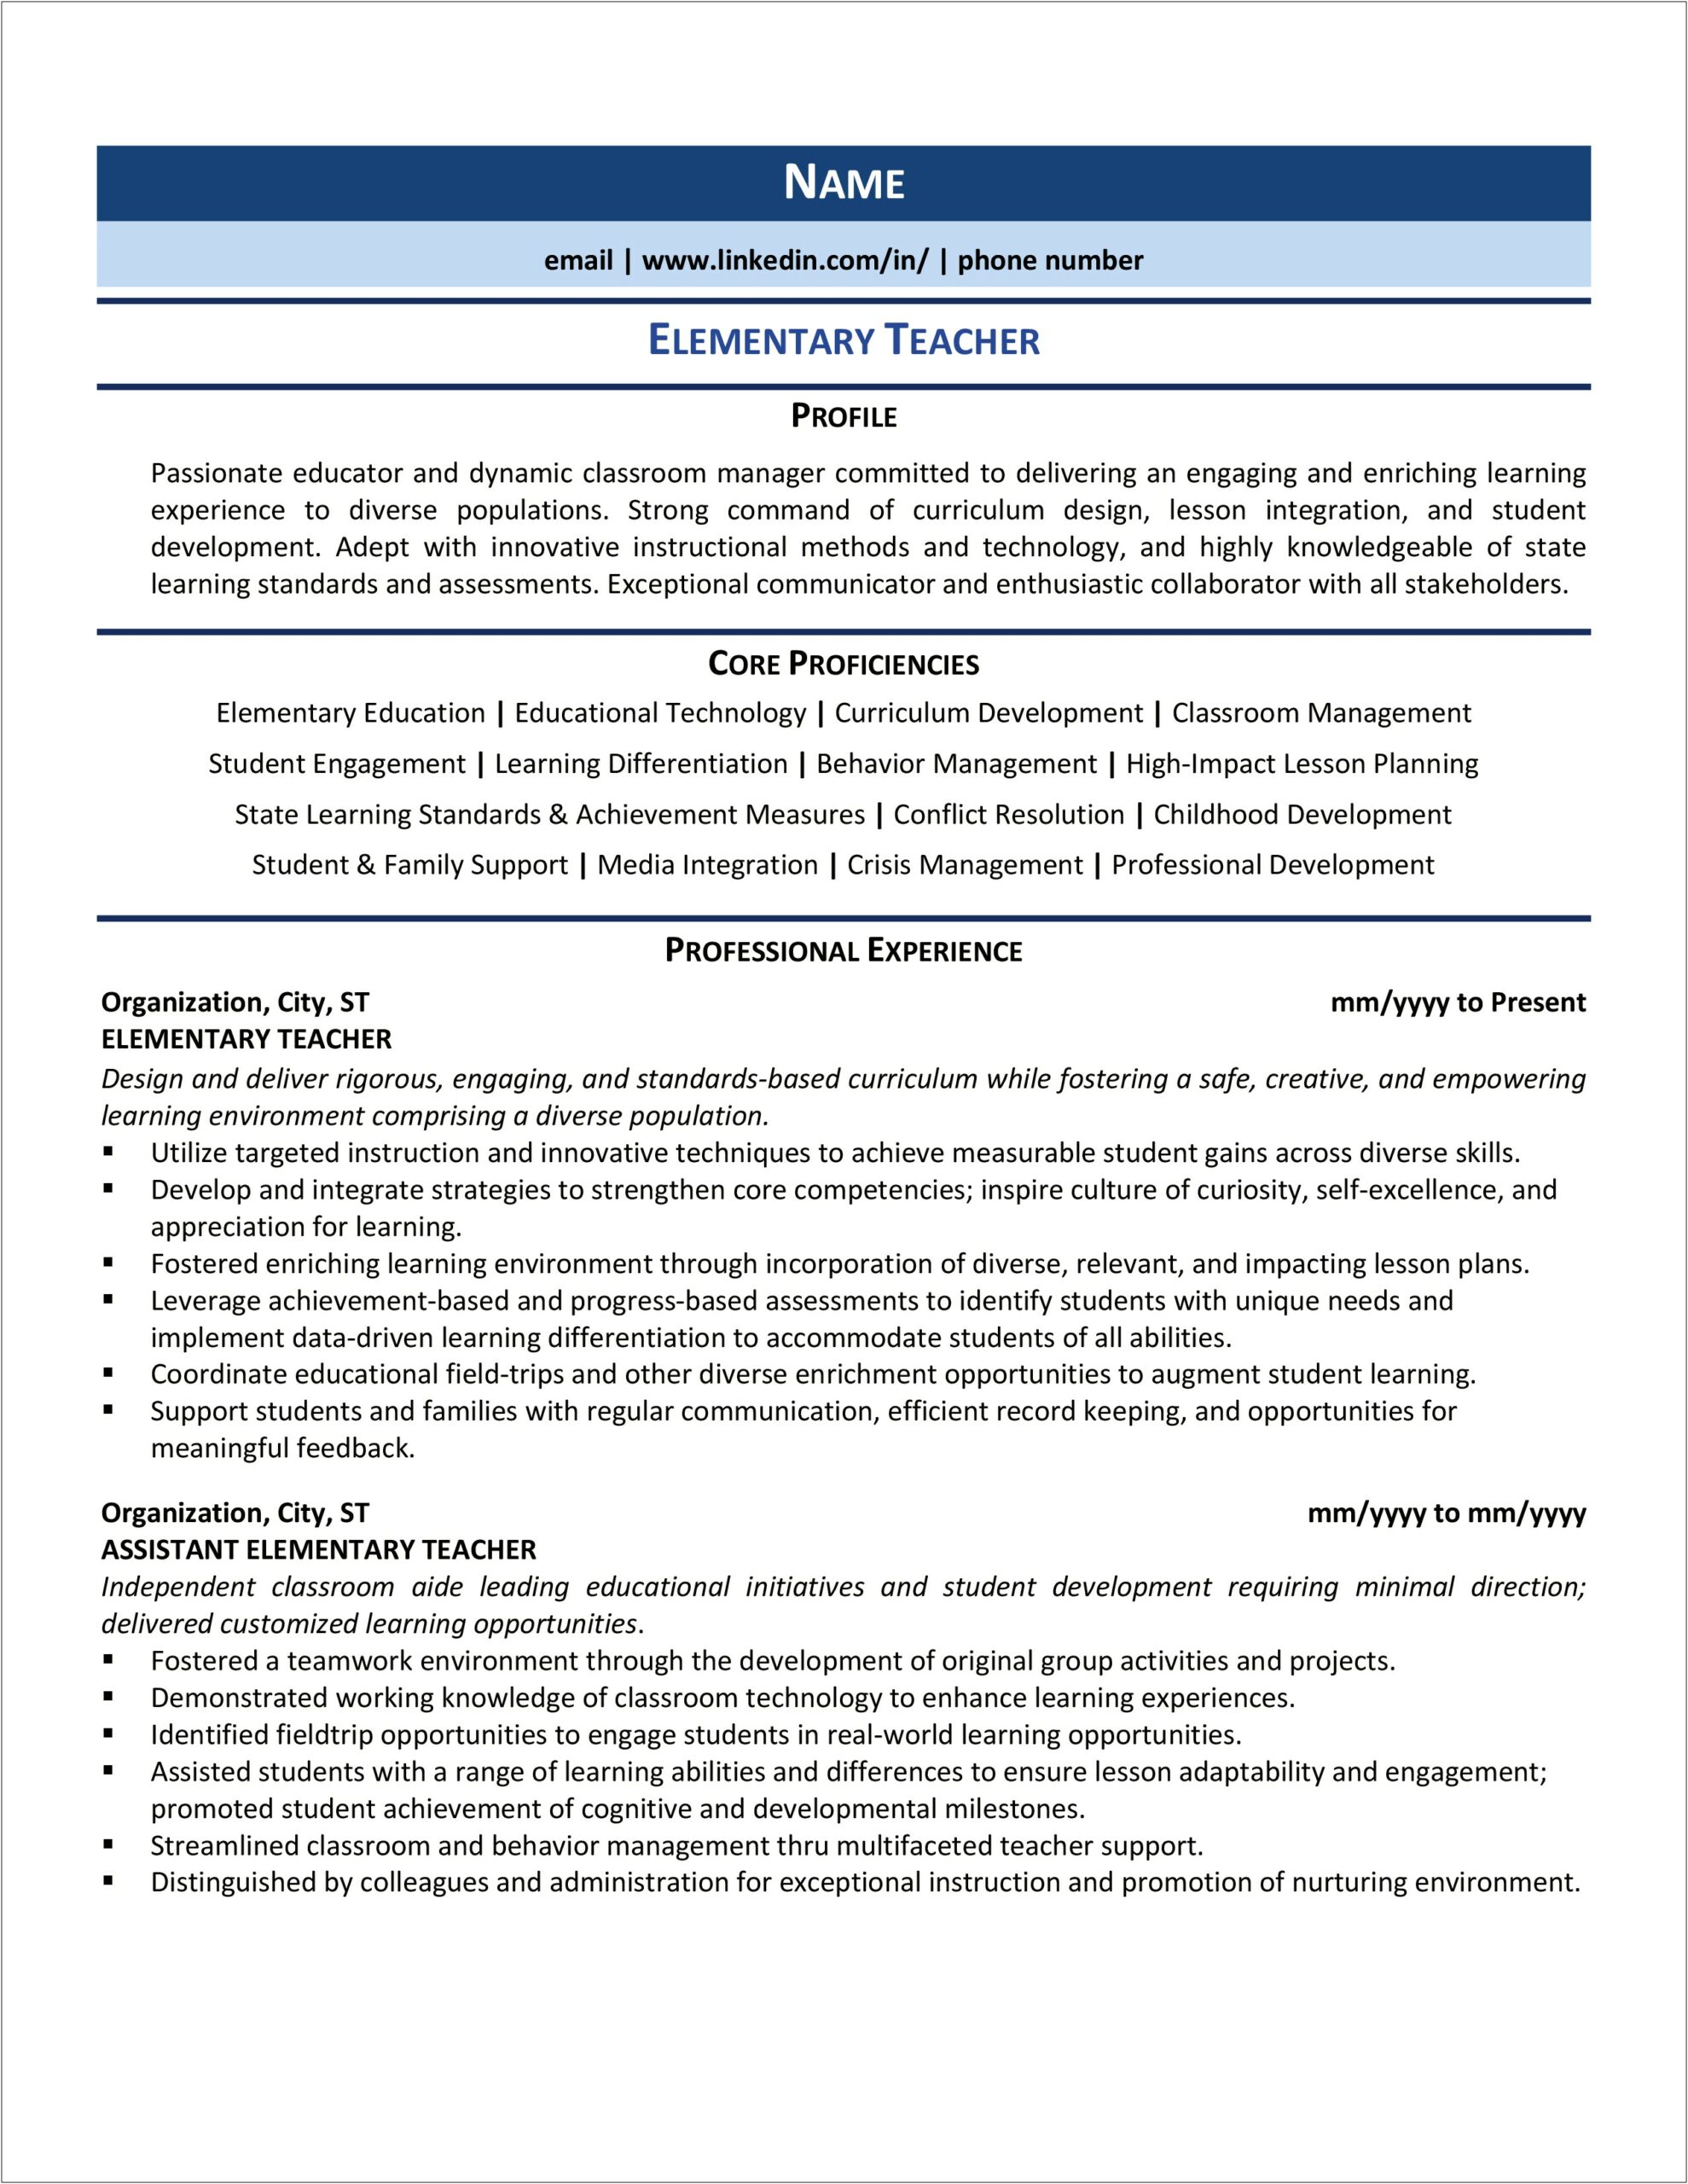 Sample Resume Profiles For Teachers